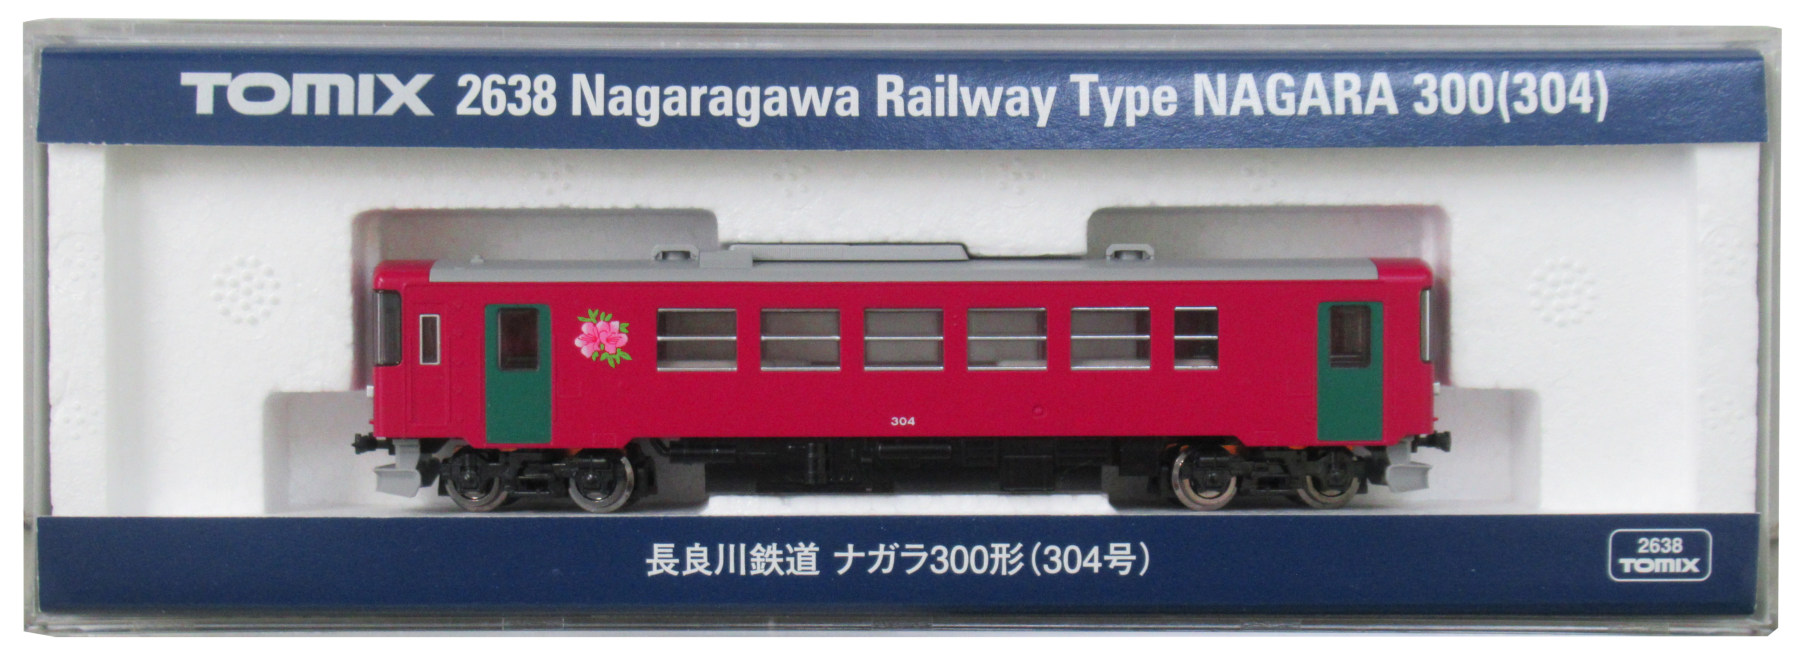 公式]鉄道模型(2638長良川鉄道 ナガラ300形 (304号))商品詳細｜TOMIX 